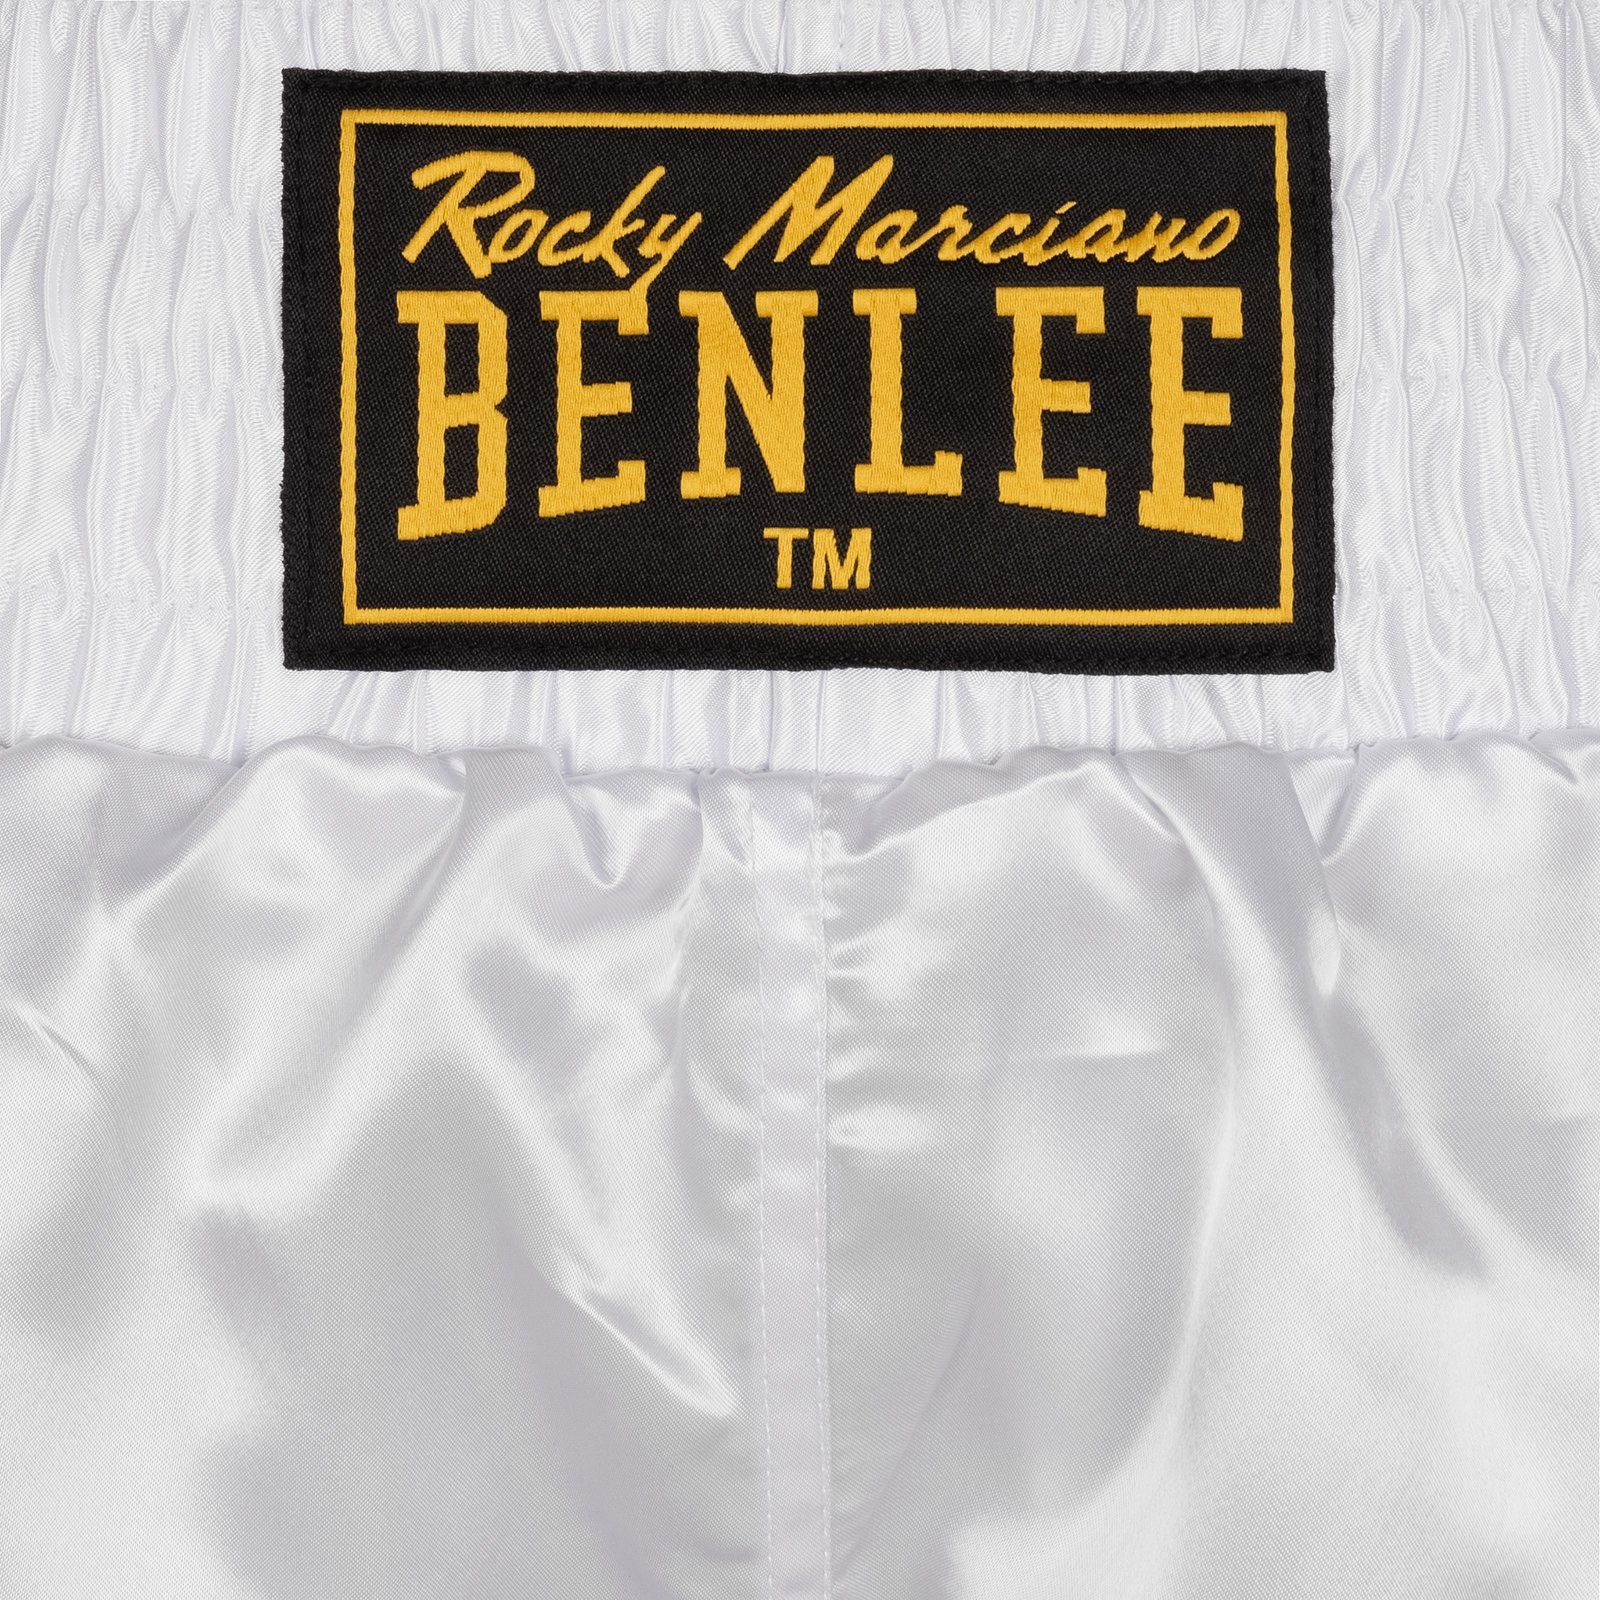 UNI Rocky BOXING Benlee Marciano Trainingshose White